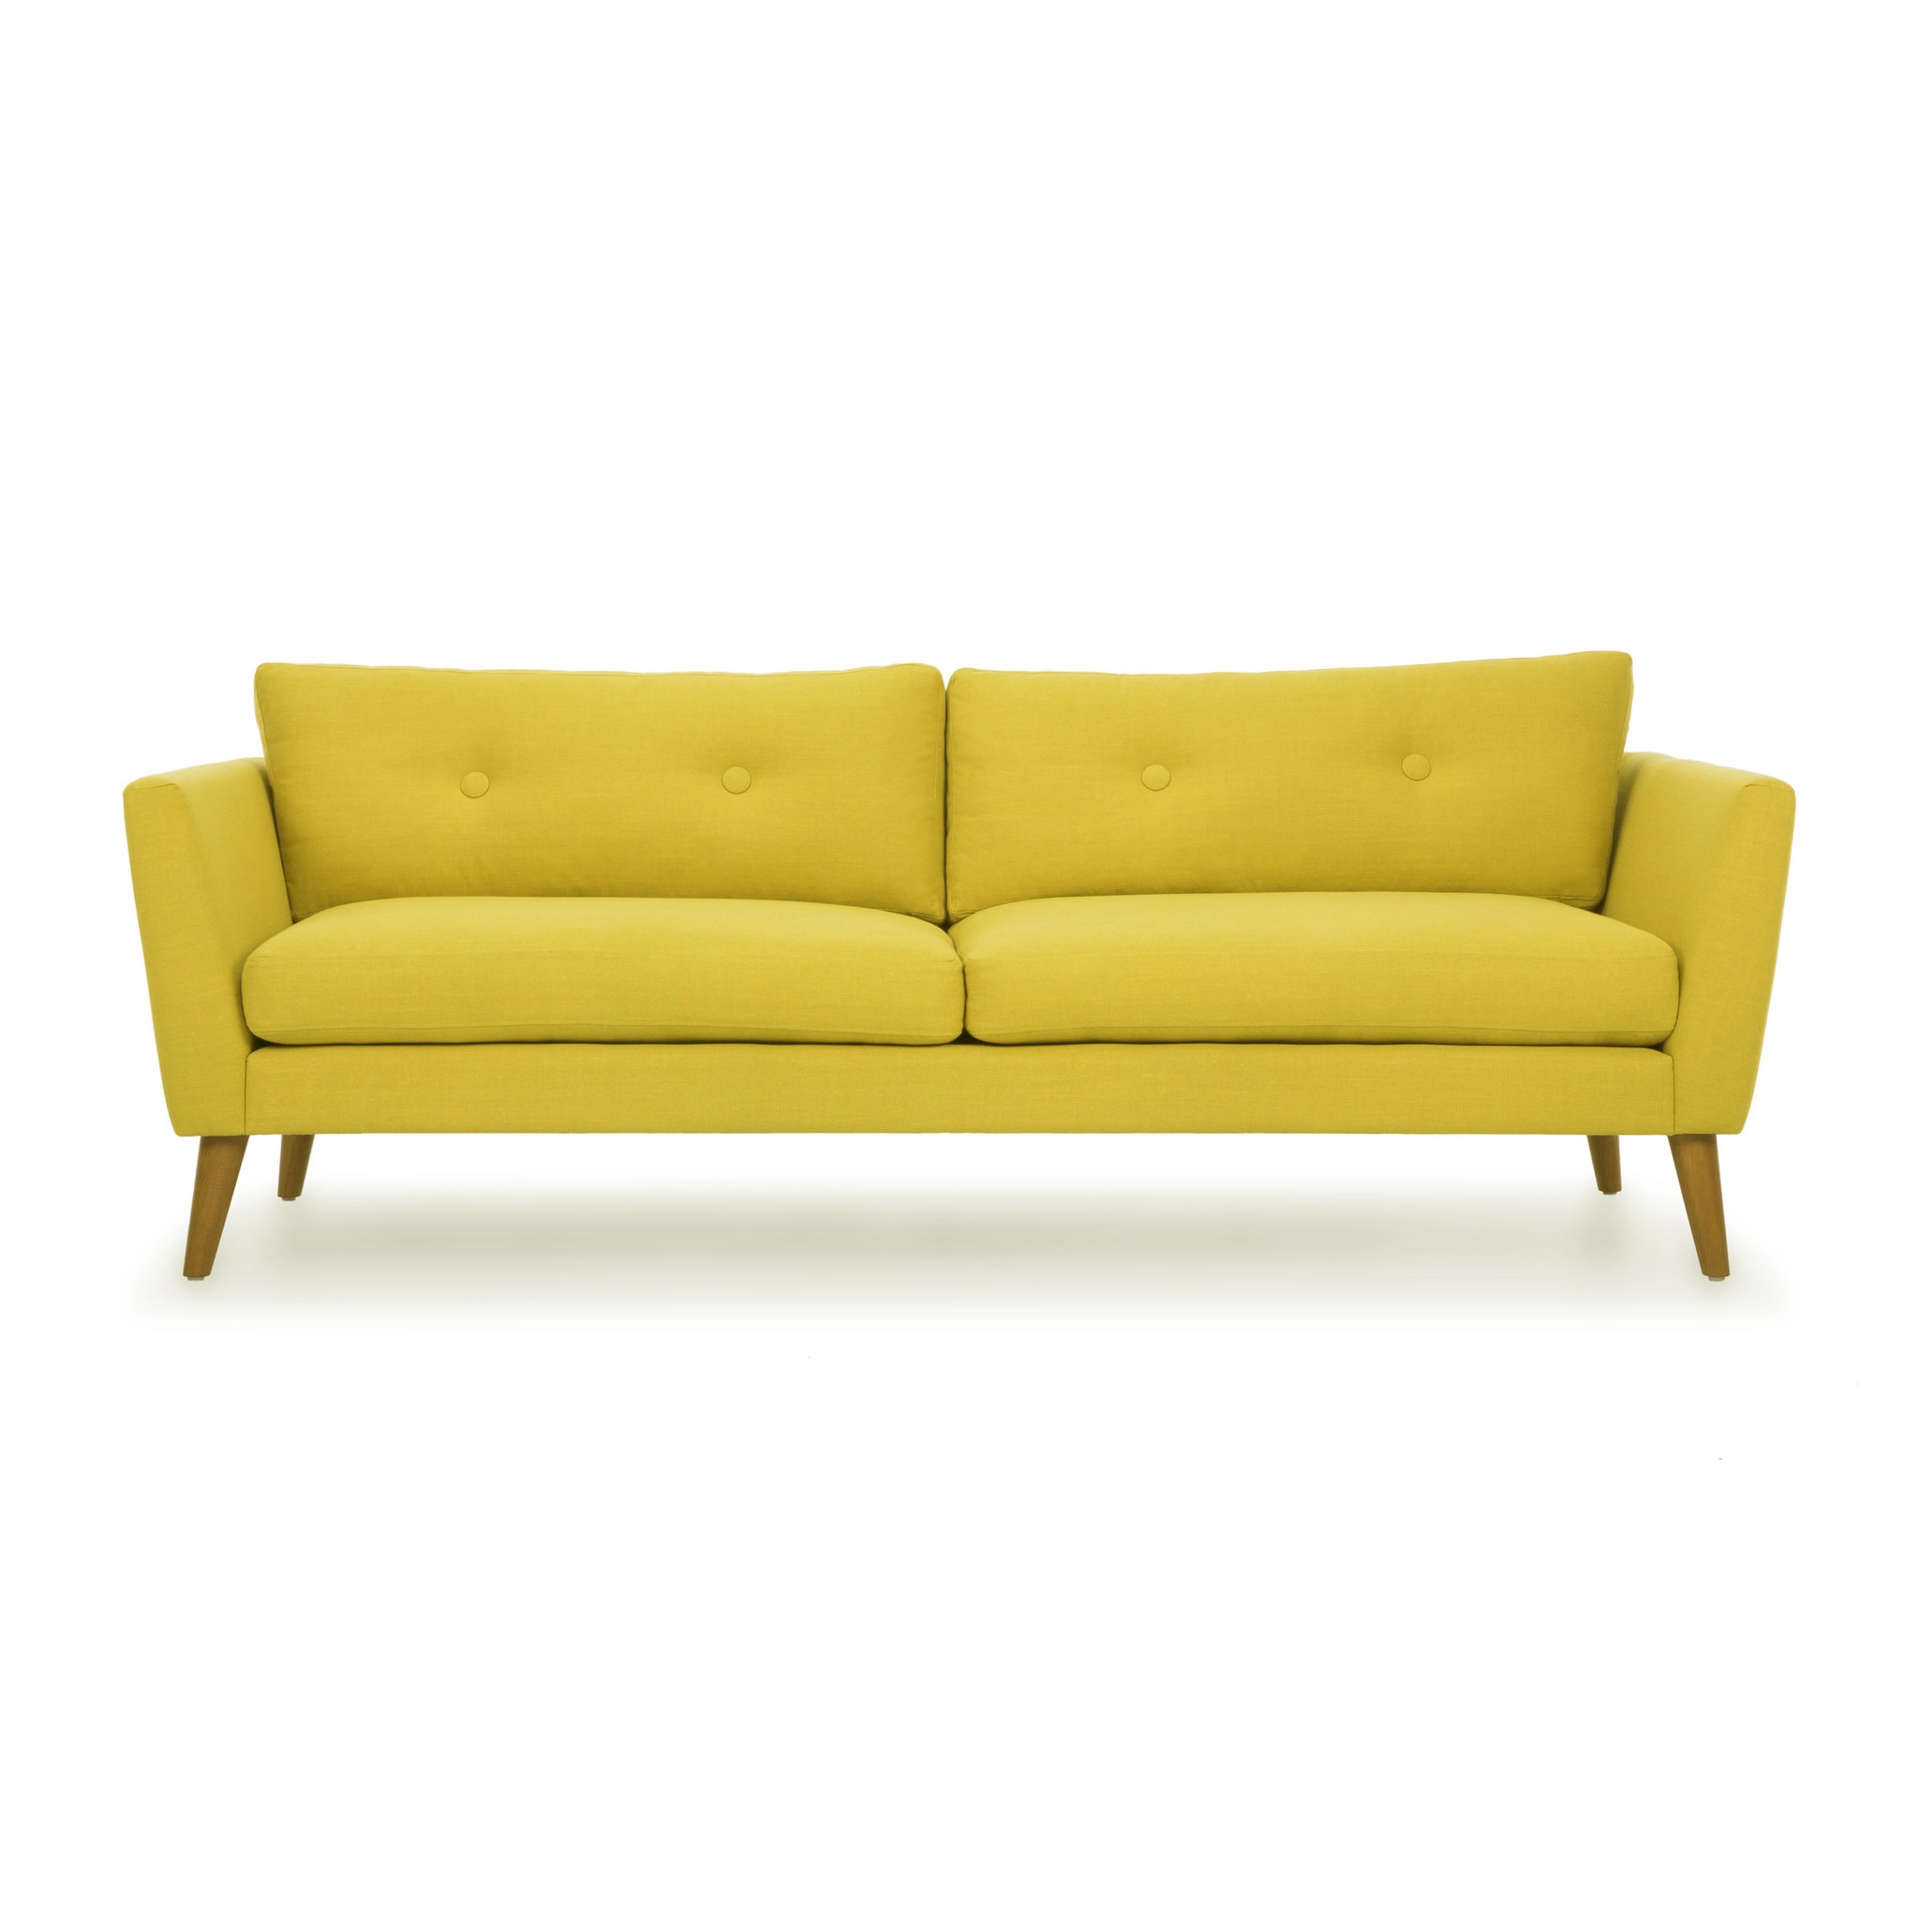 Трехместный диван хадсон l yellow (vysotkahome) желтый 209x79x89 см.